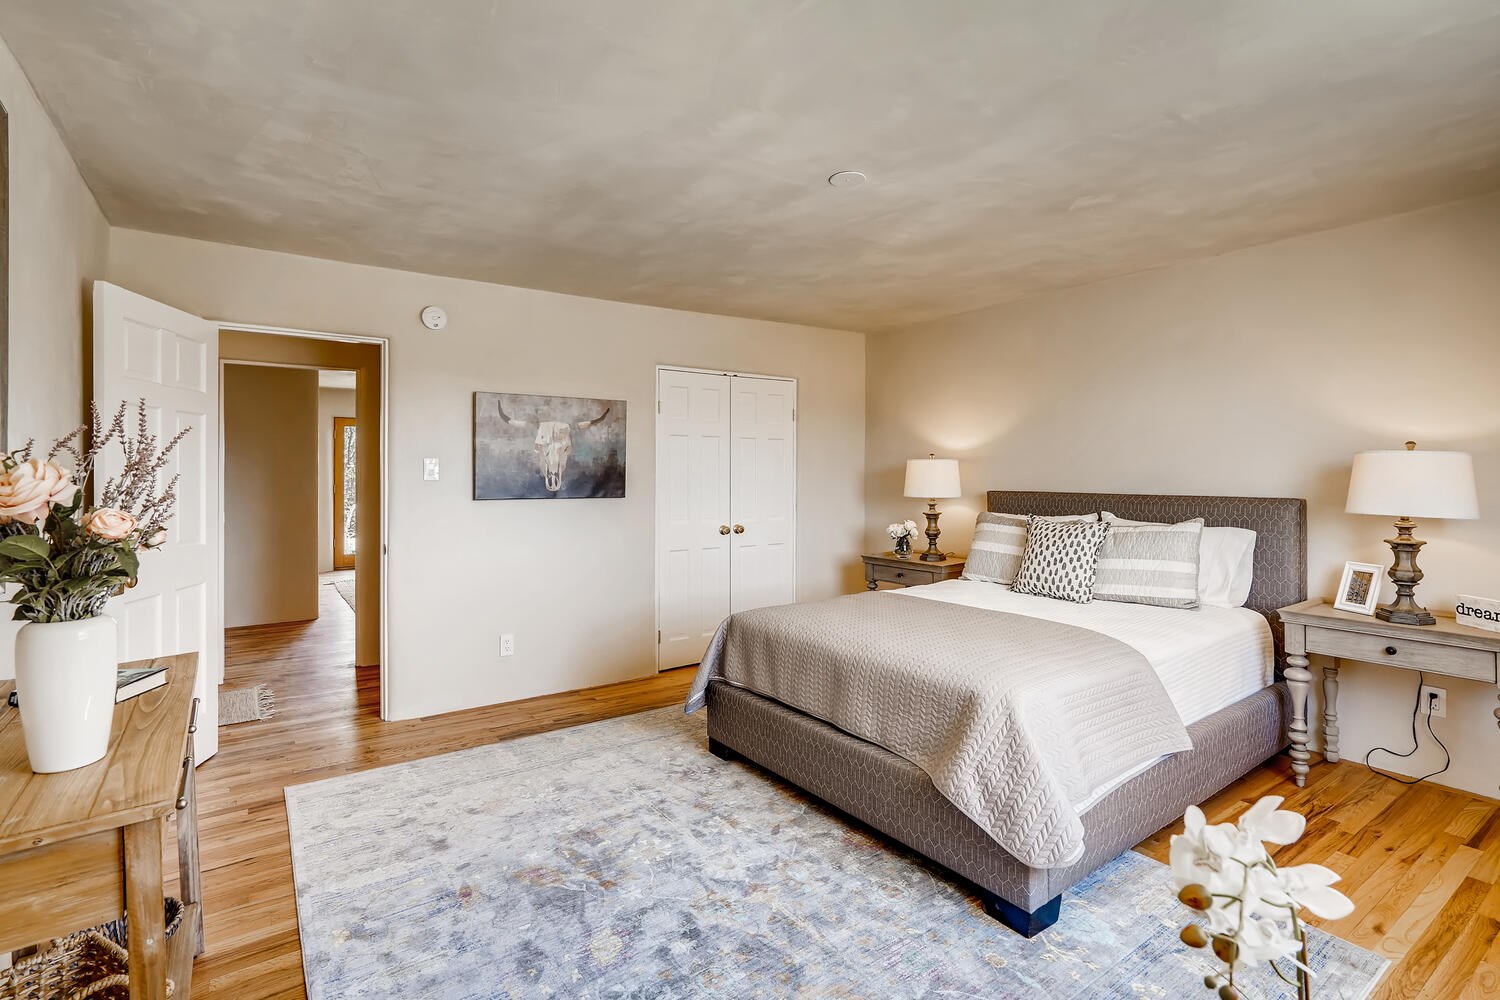 130 Coronado, Santa Fe, New Mexico 87505, 3 Bedrooms Bedrooms, ,2 BathroomsBathrooms,Residential,For Sale,130 Coronado,202002024